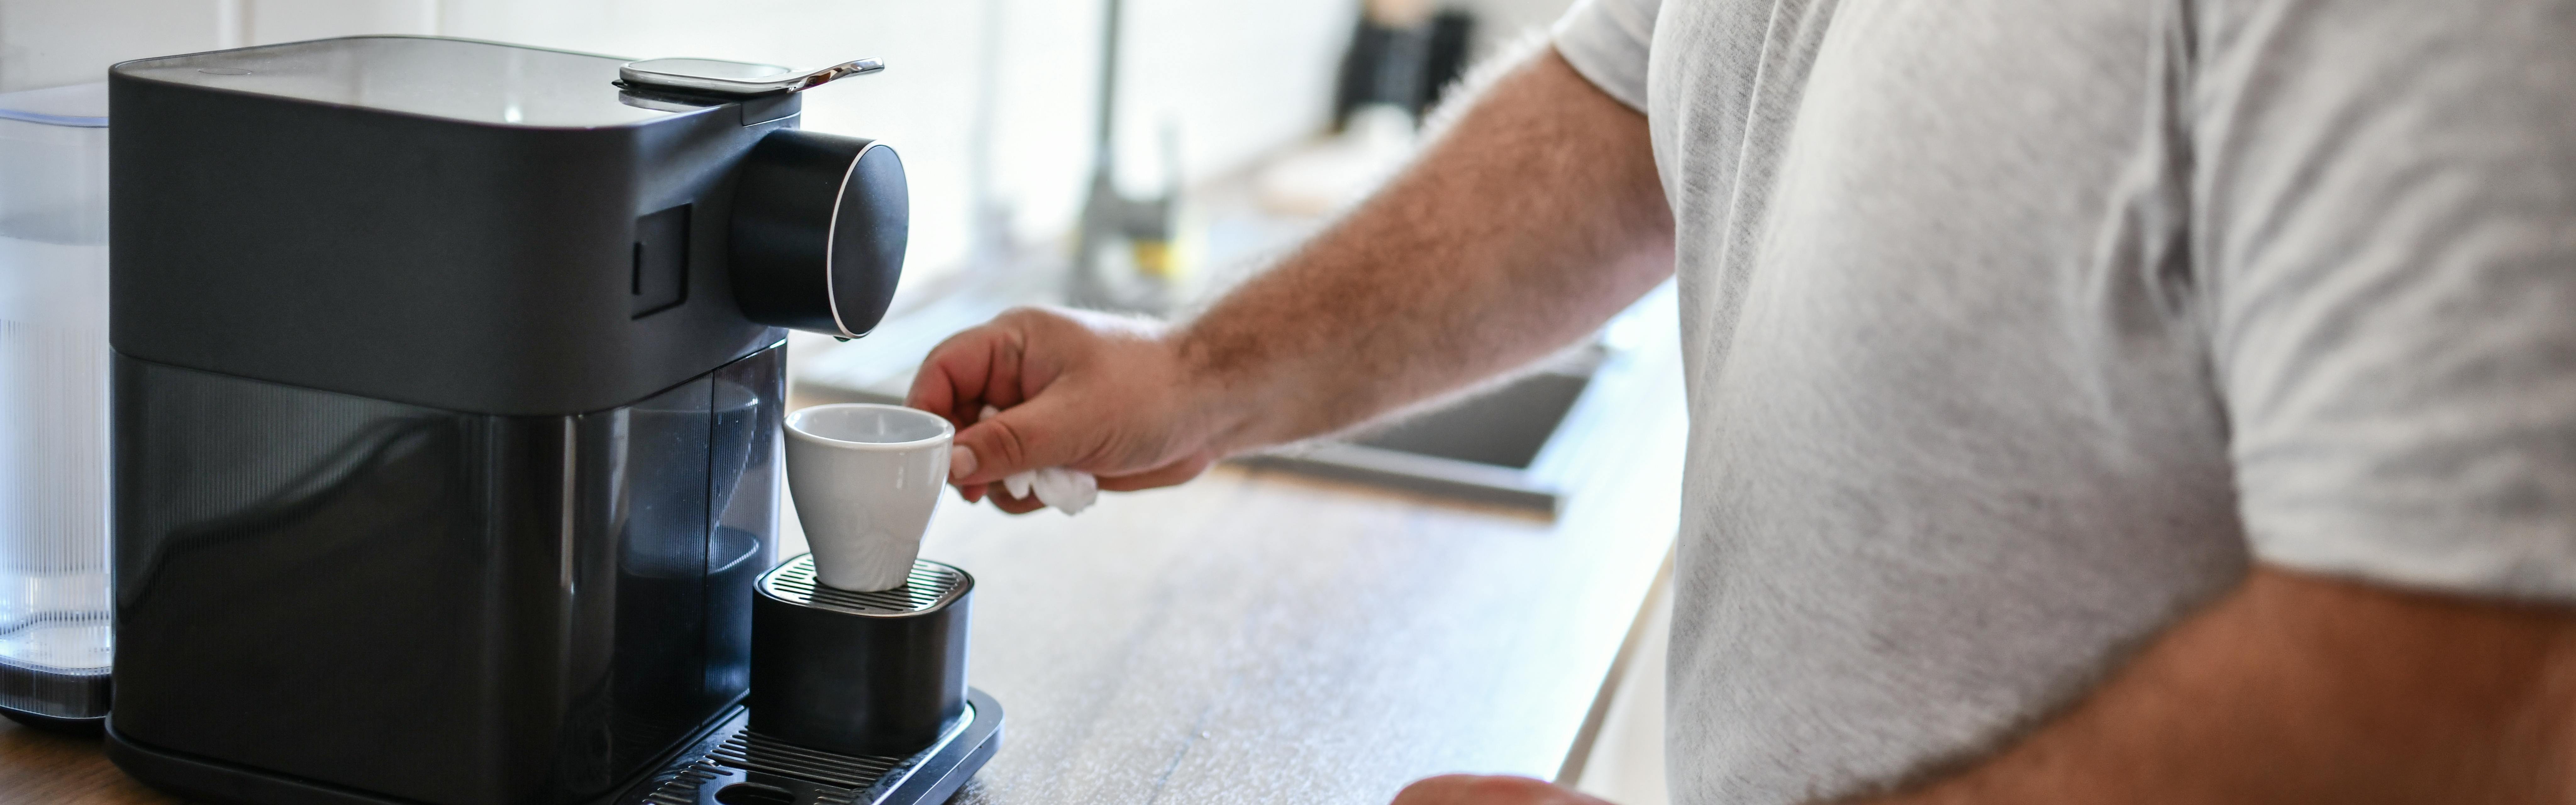 A man reaches out to pick up a ceramic espresso mug from his espresso machine.